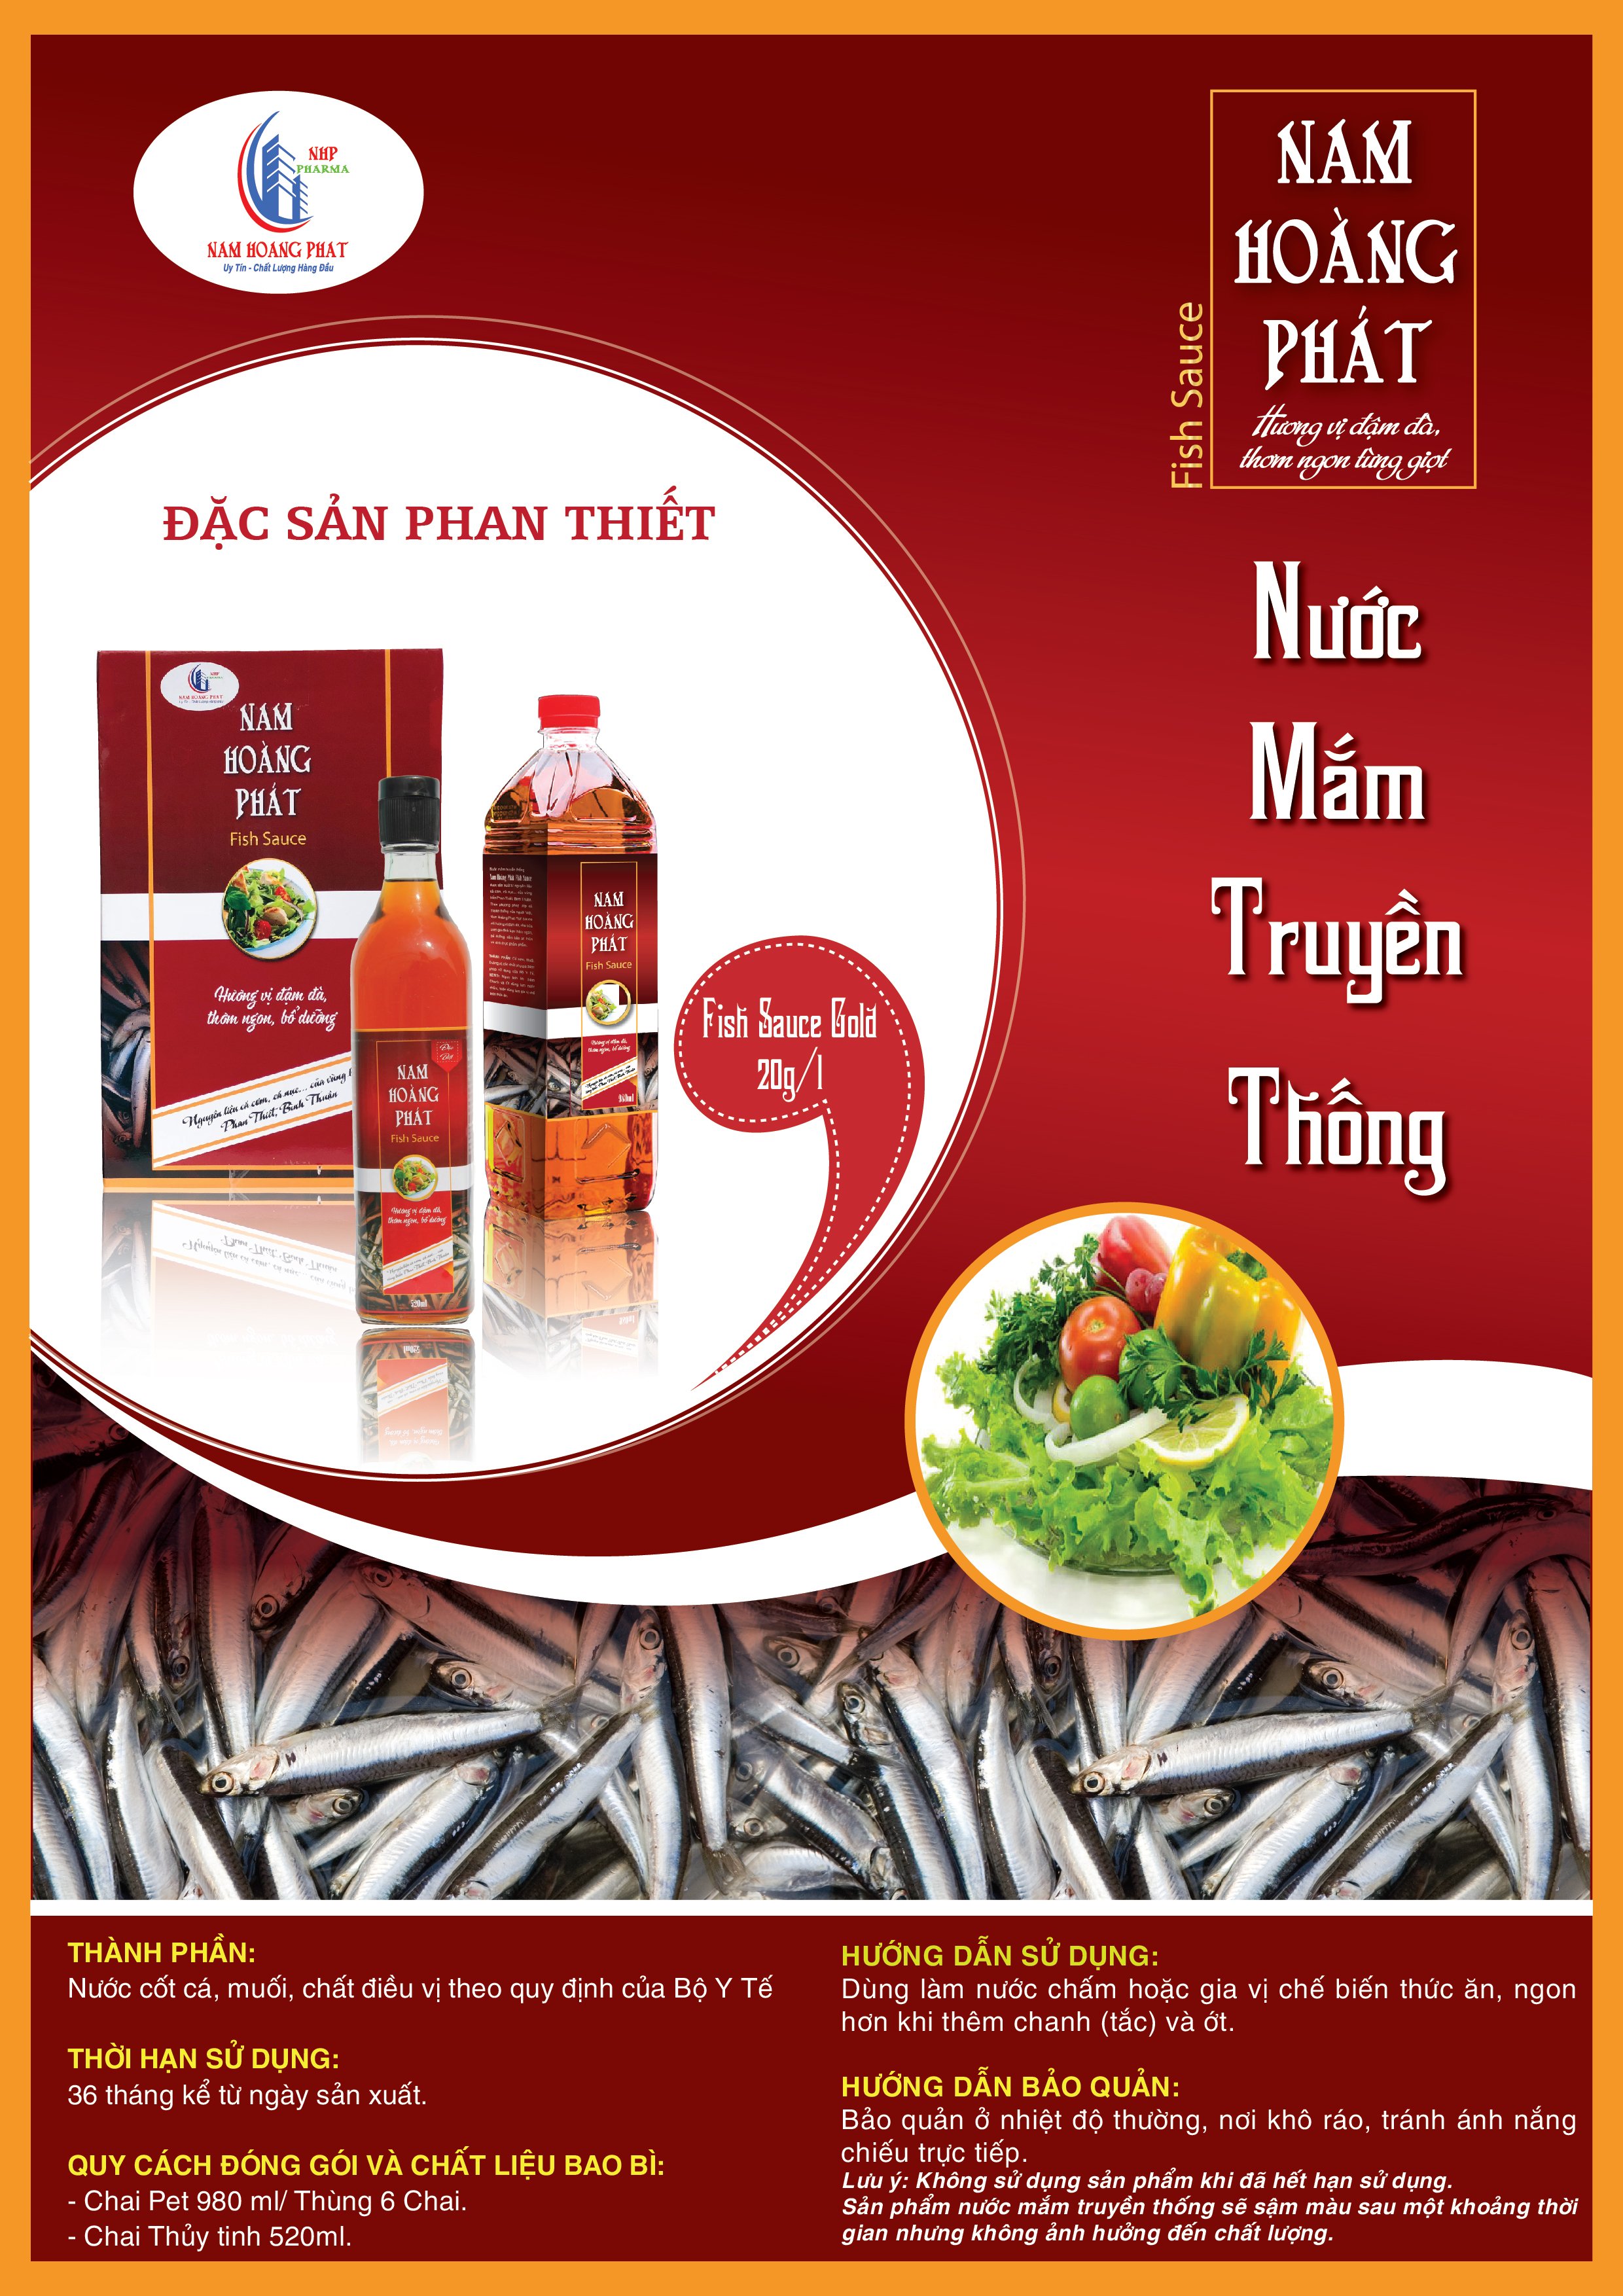 Nam Hoàng Phát Fish Sauce Gold 20N (Thùng 06 chai 520ml)